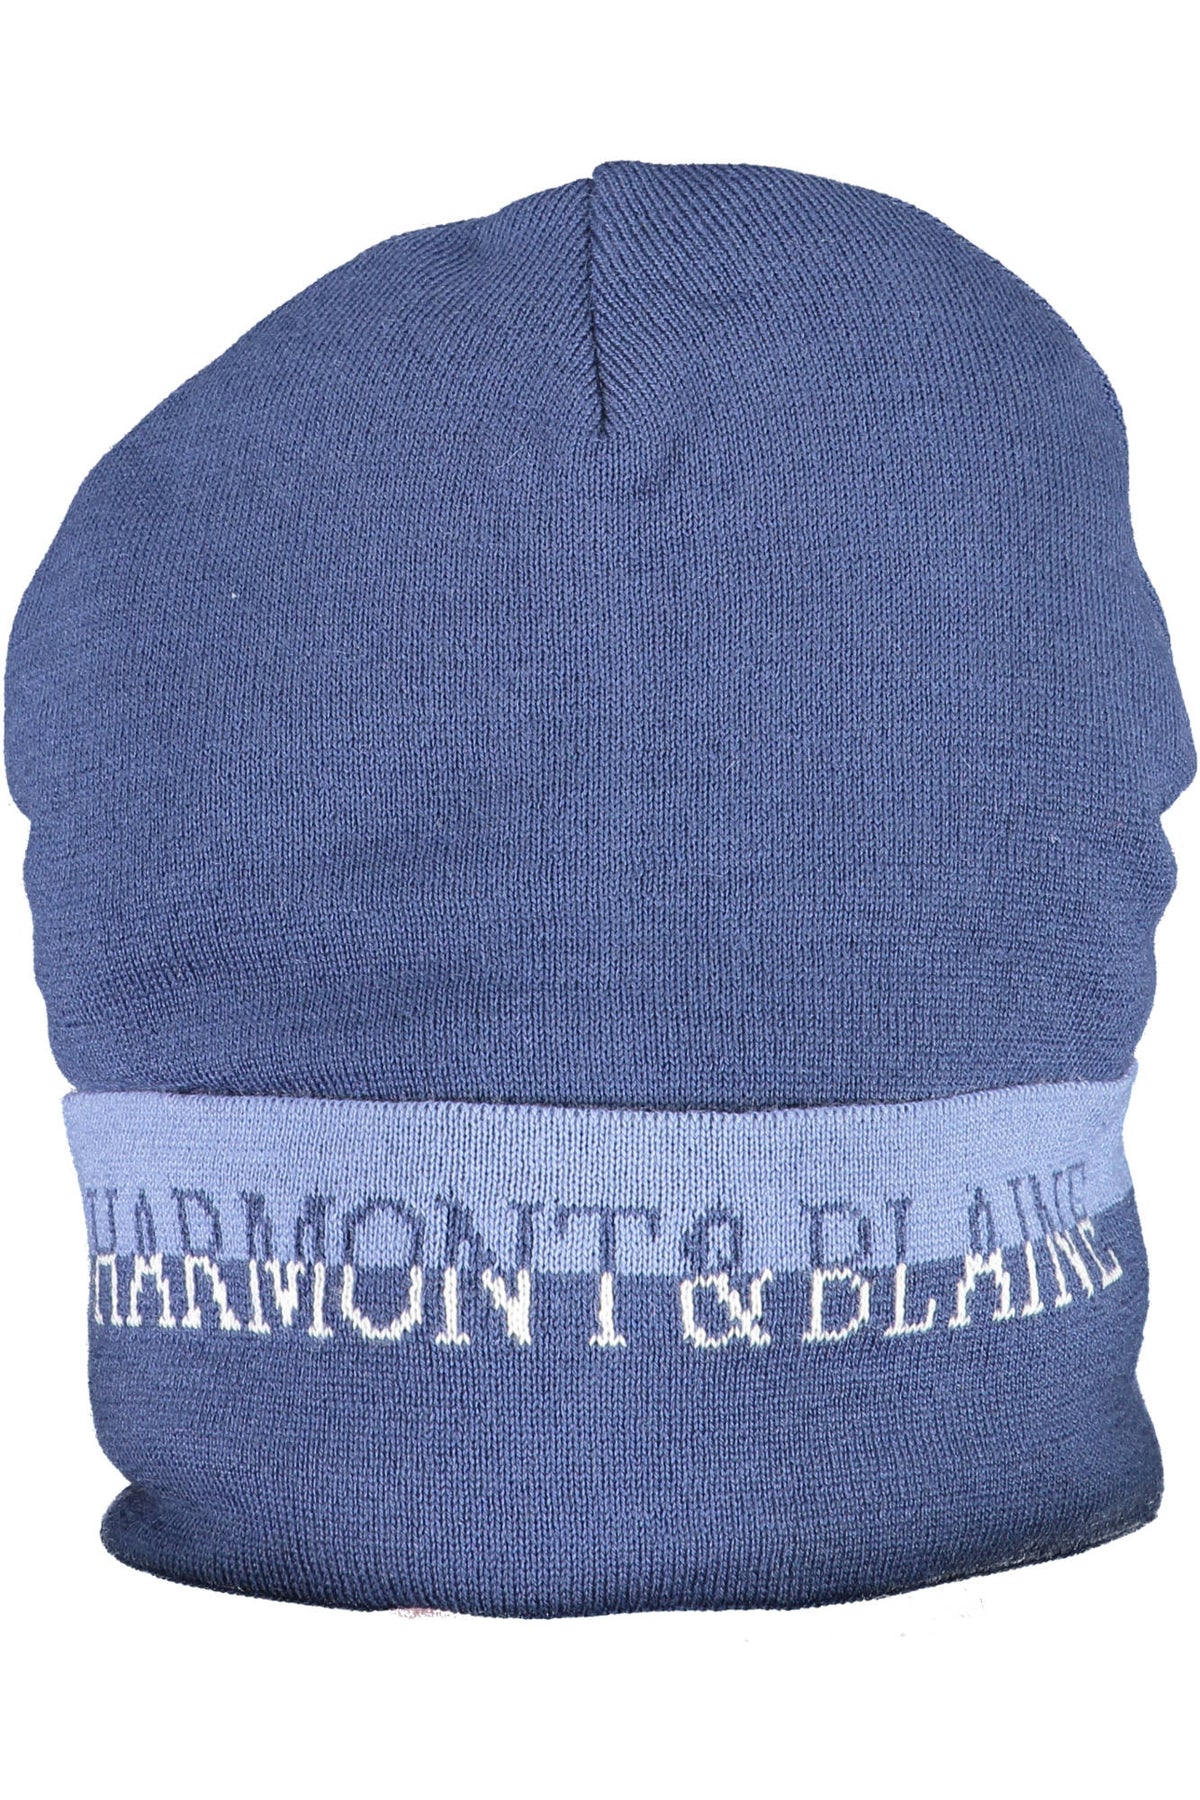 HARMONT & BLAINE Herren Mütze Hut Kopfbedeckung Wintermütze Strickmütze